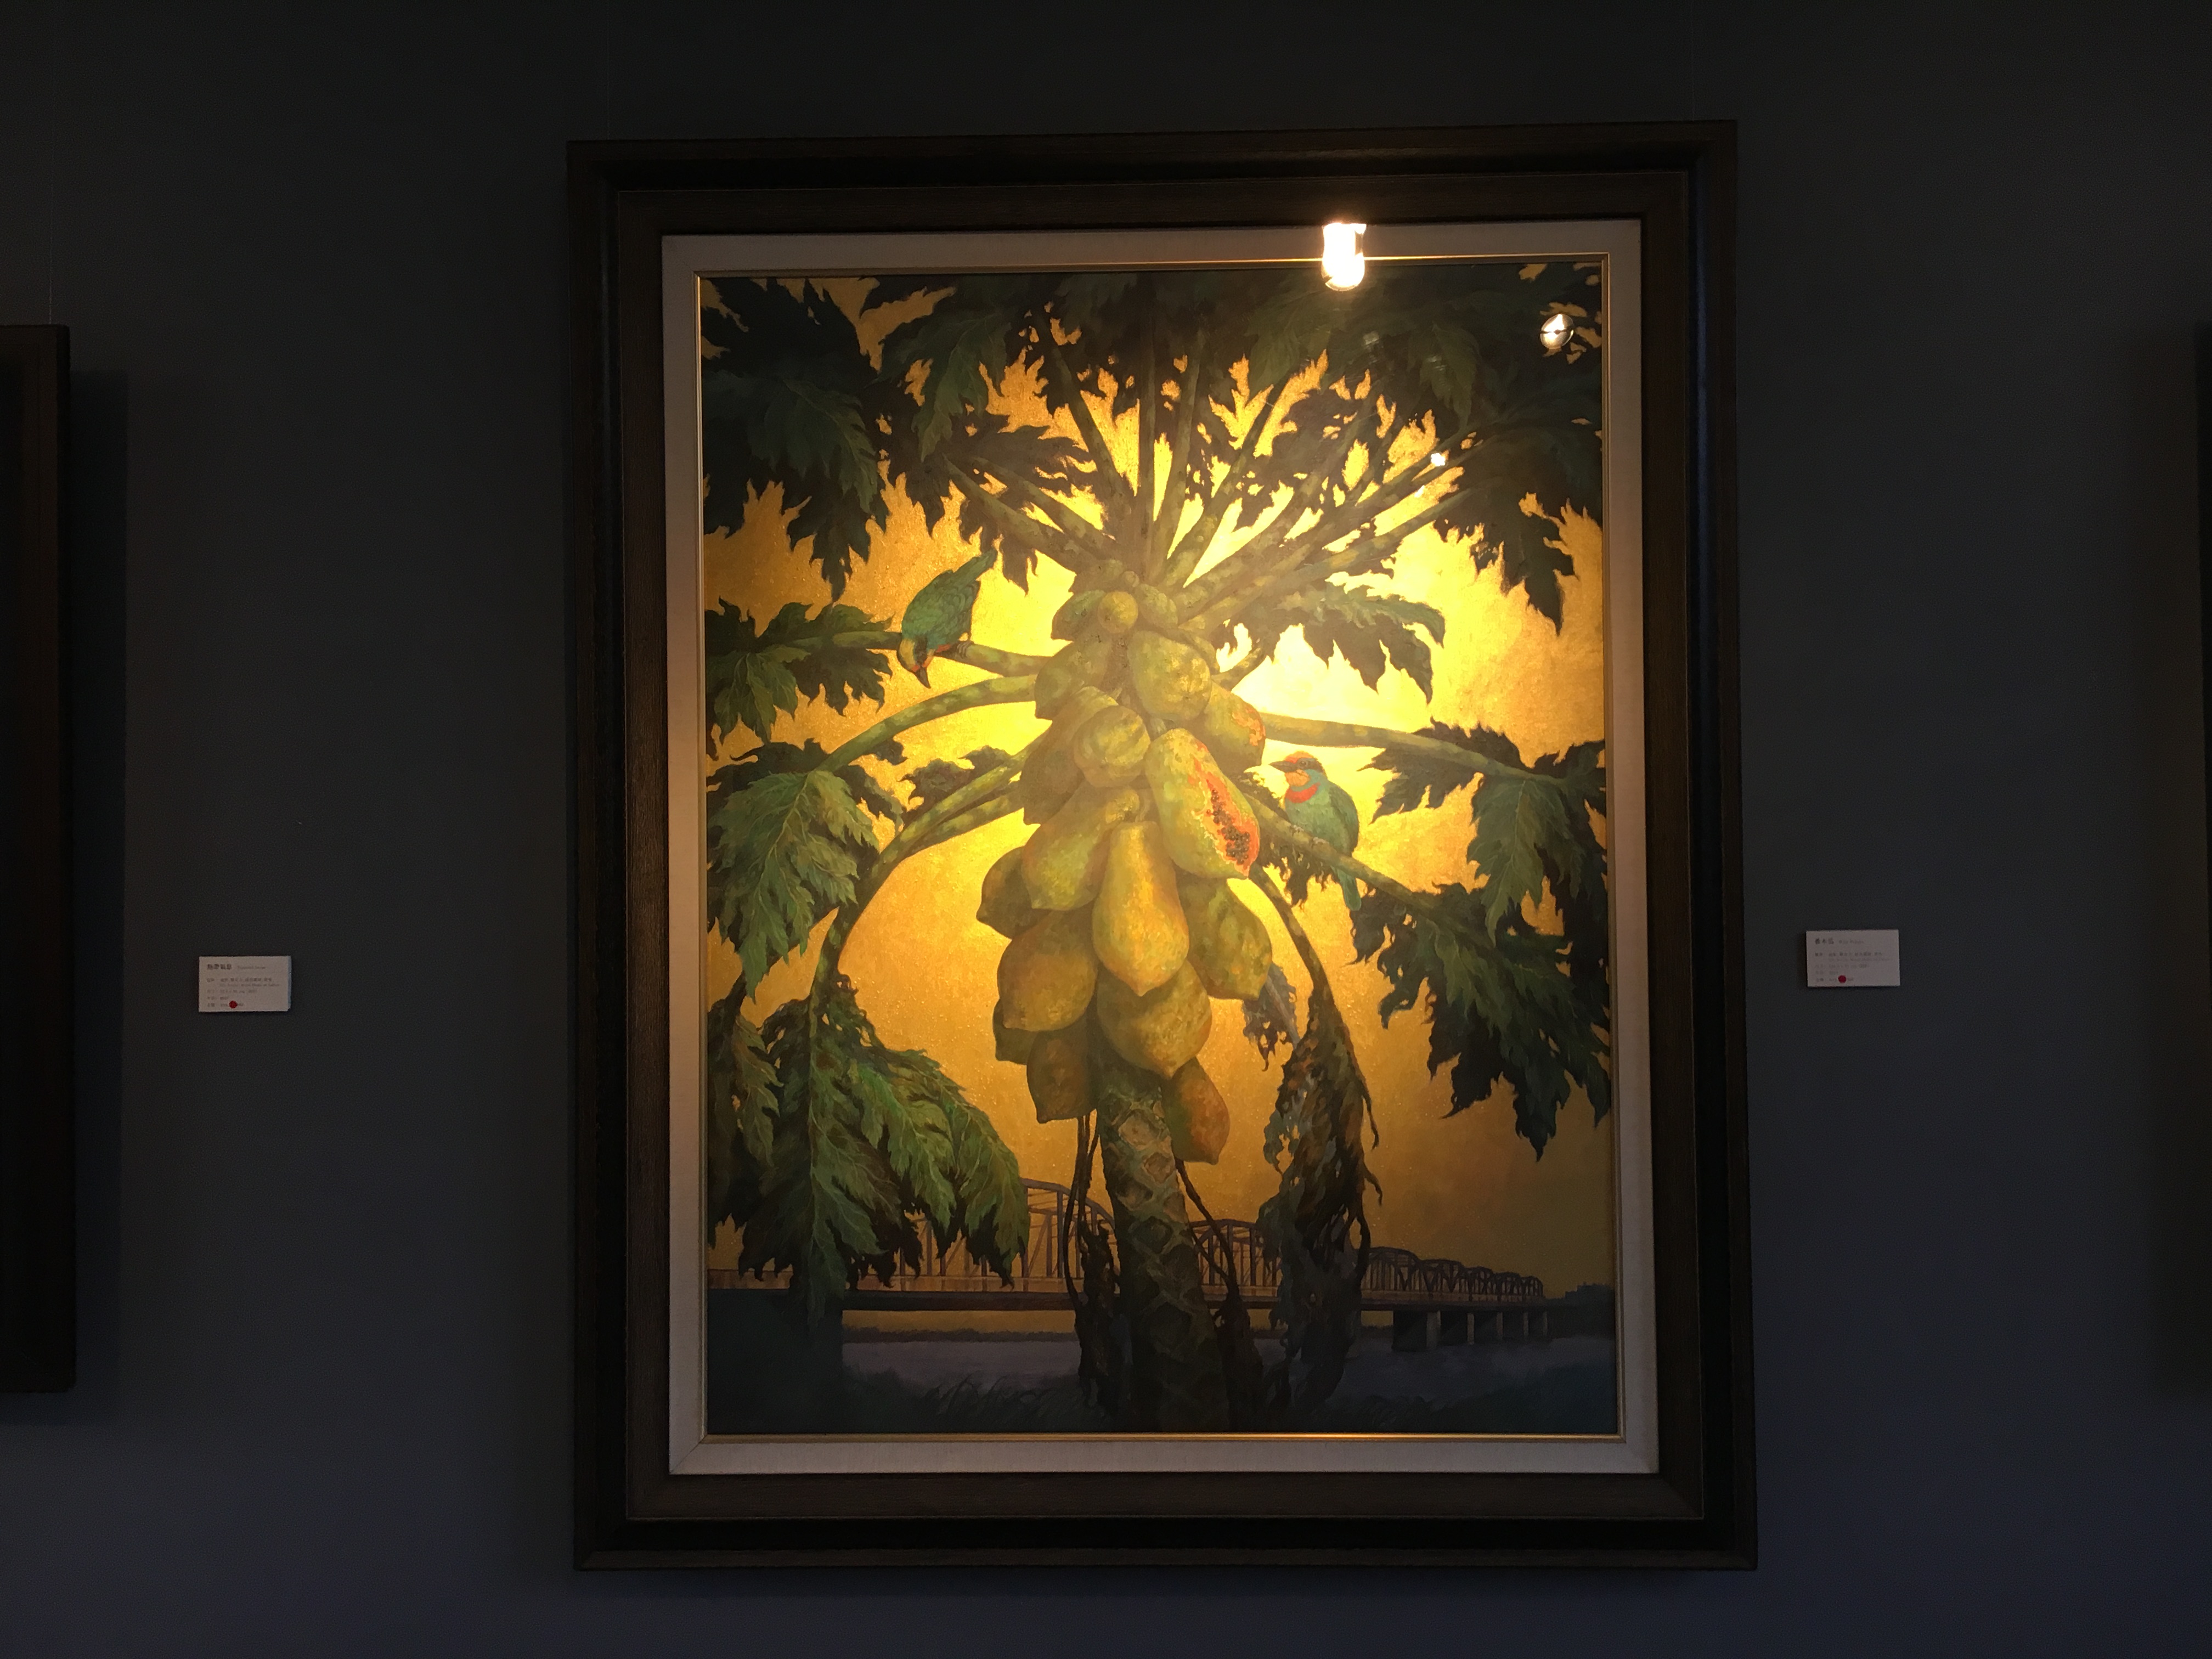 劉子平，《番木瓜》，116.5 x 91 cm，油彩、壓克力、綜合媒材、畫布，2019。